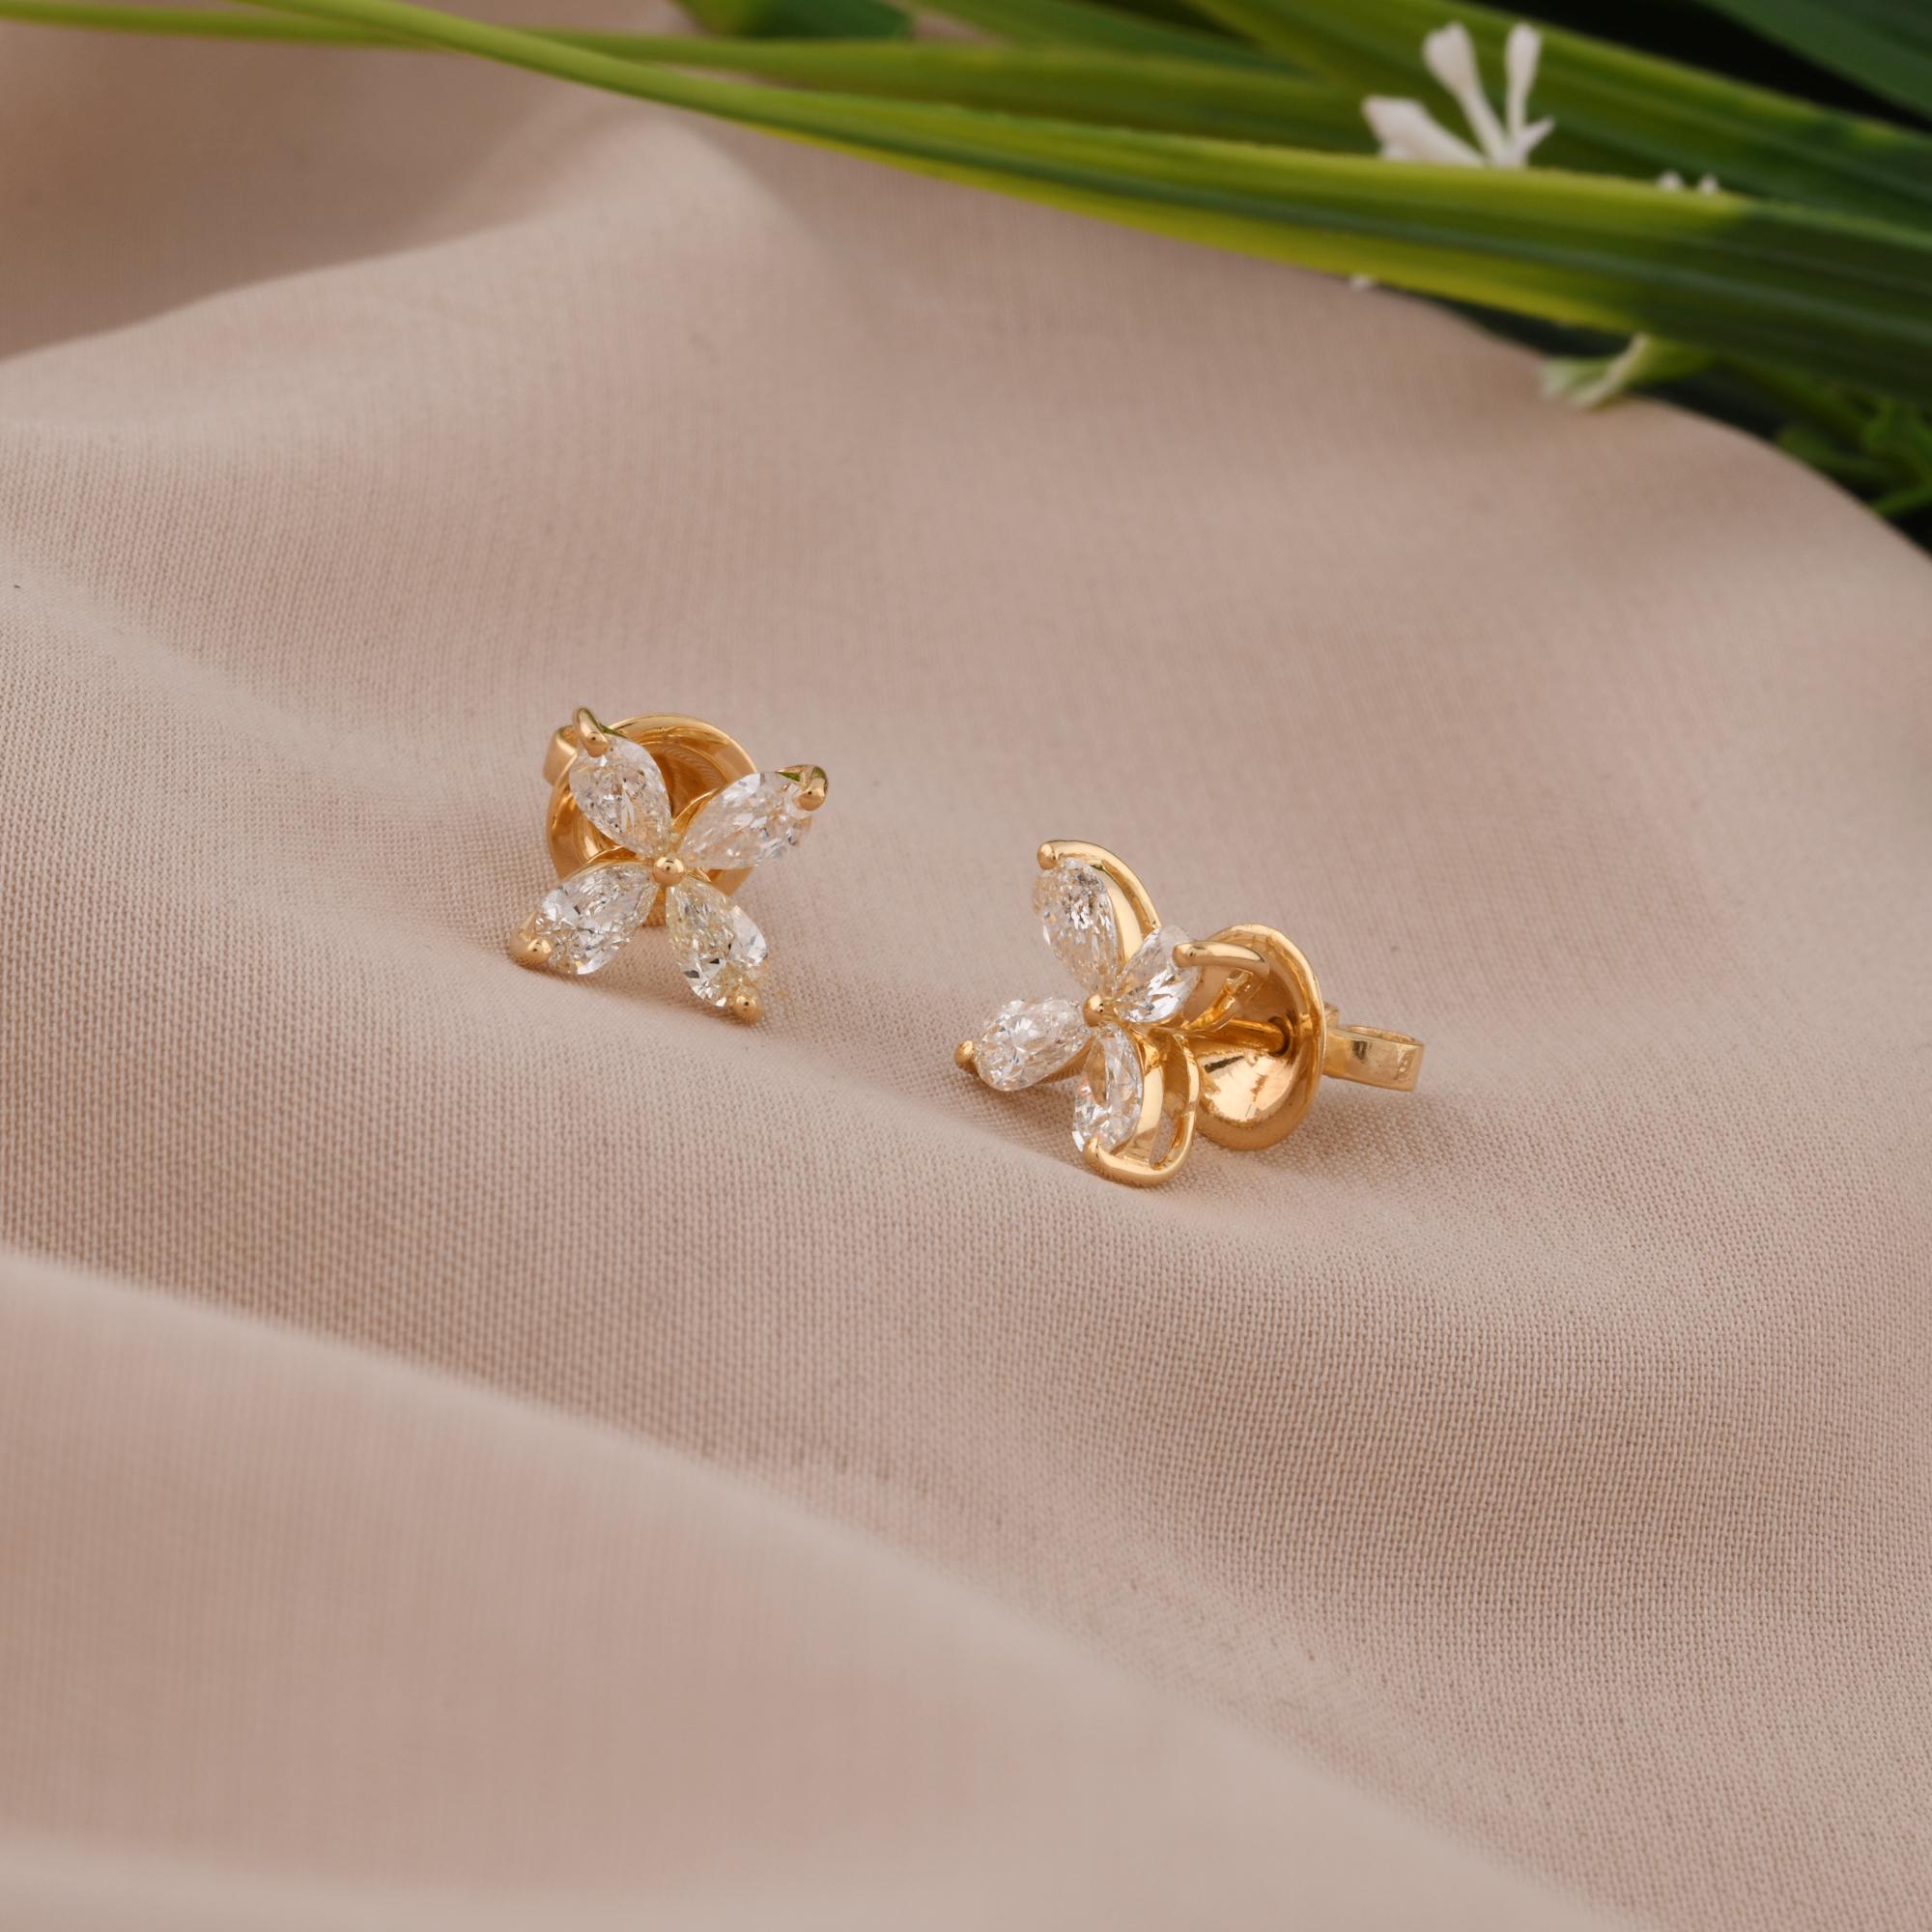 Modern 1.17 Carat Pear Shape Diamond Flower Stud Earrings 18 Karat Yellow Gold Jewelry For Sale